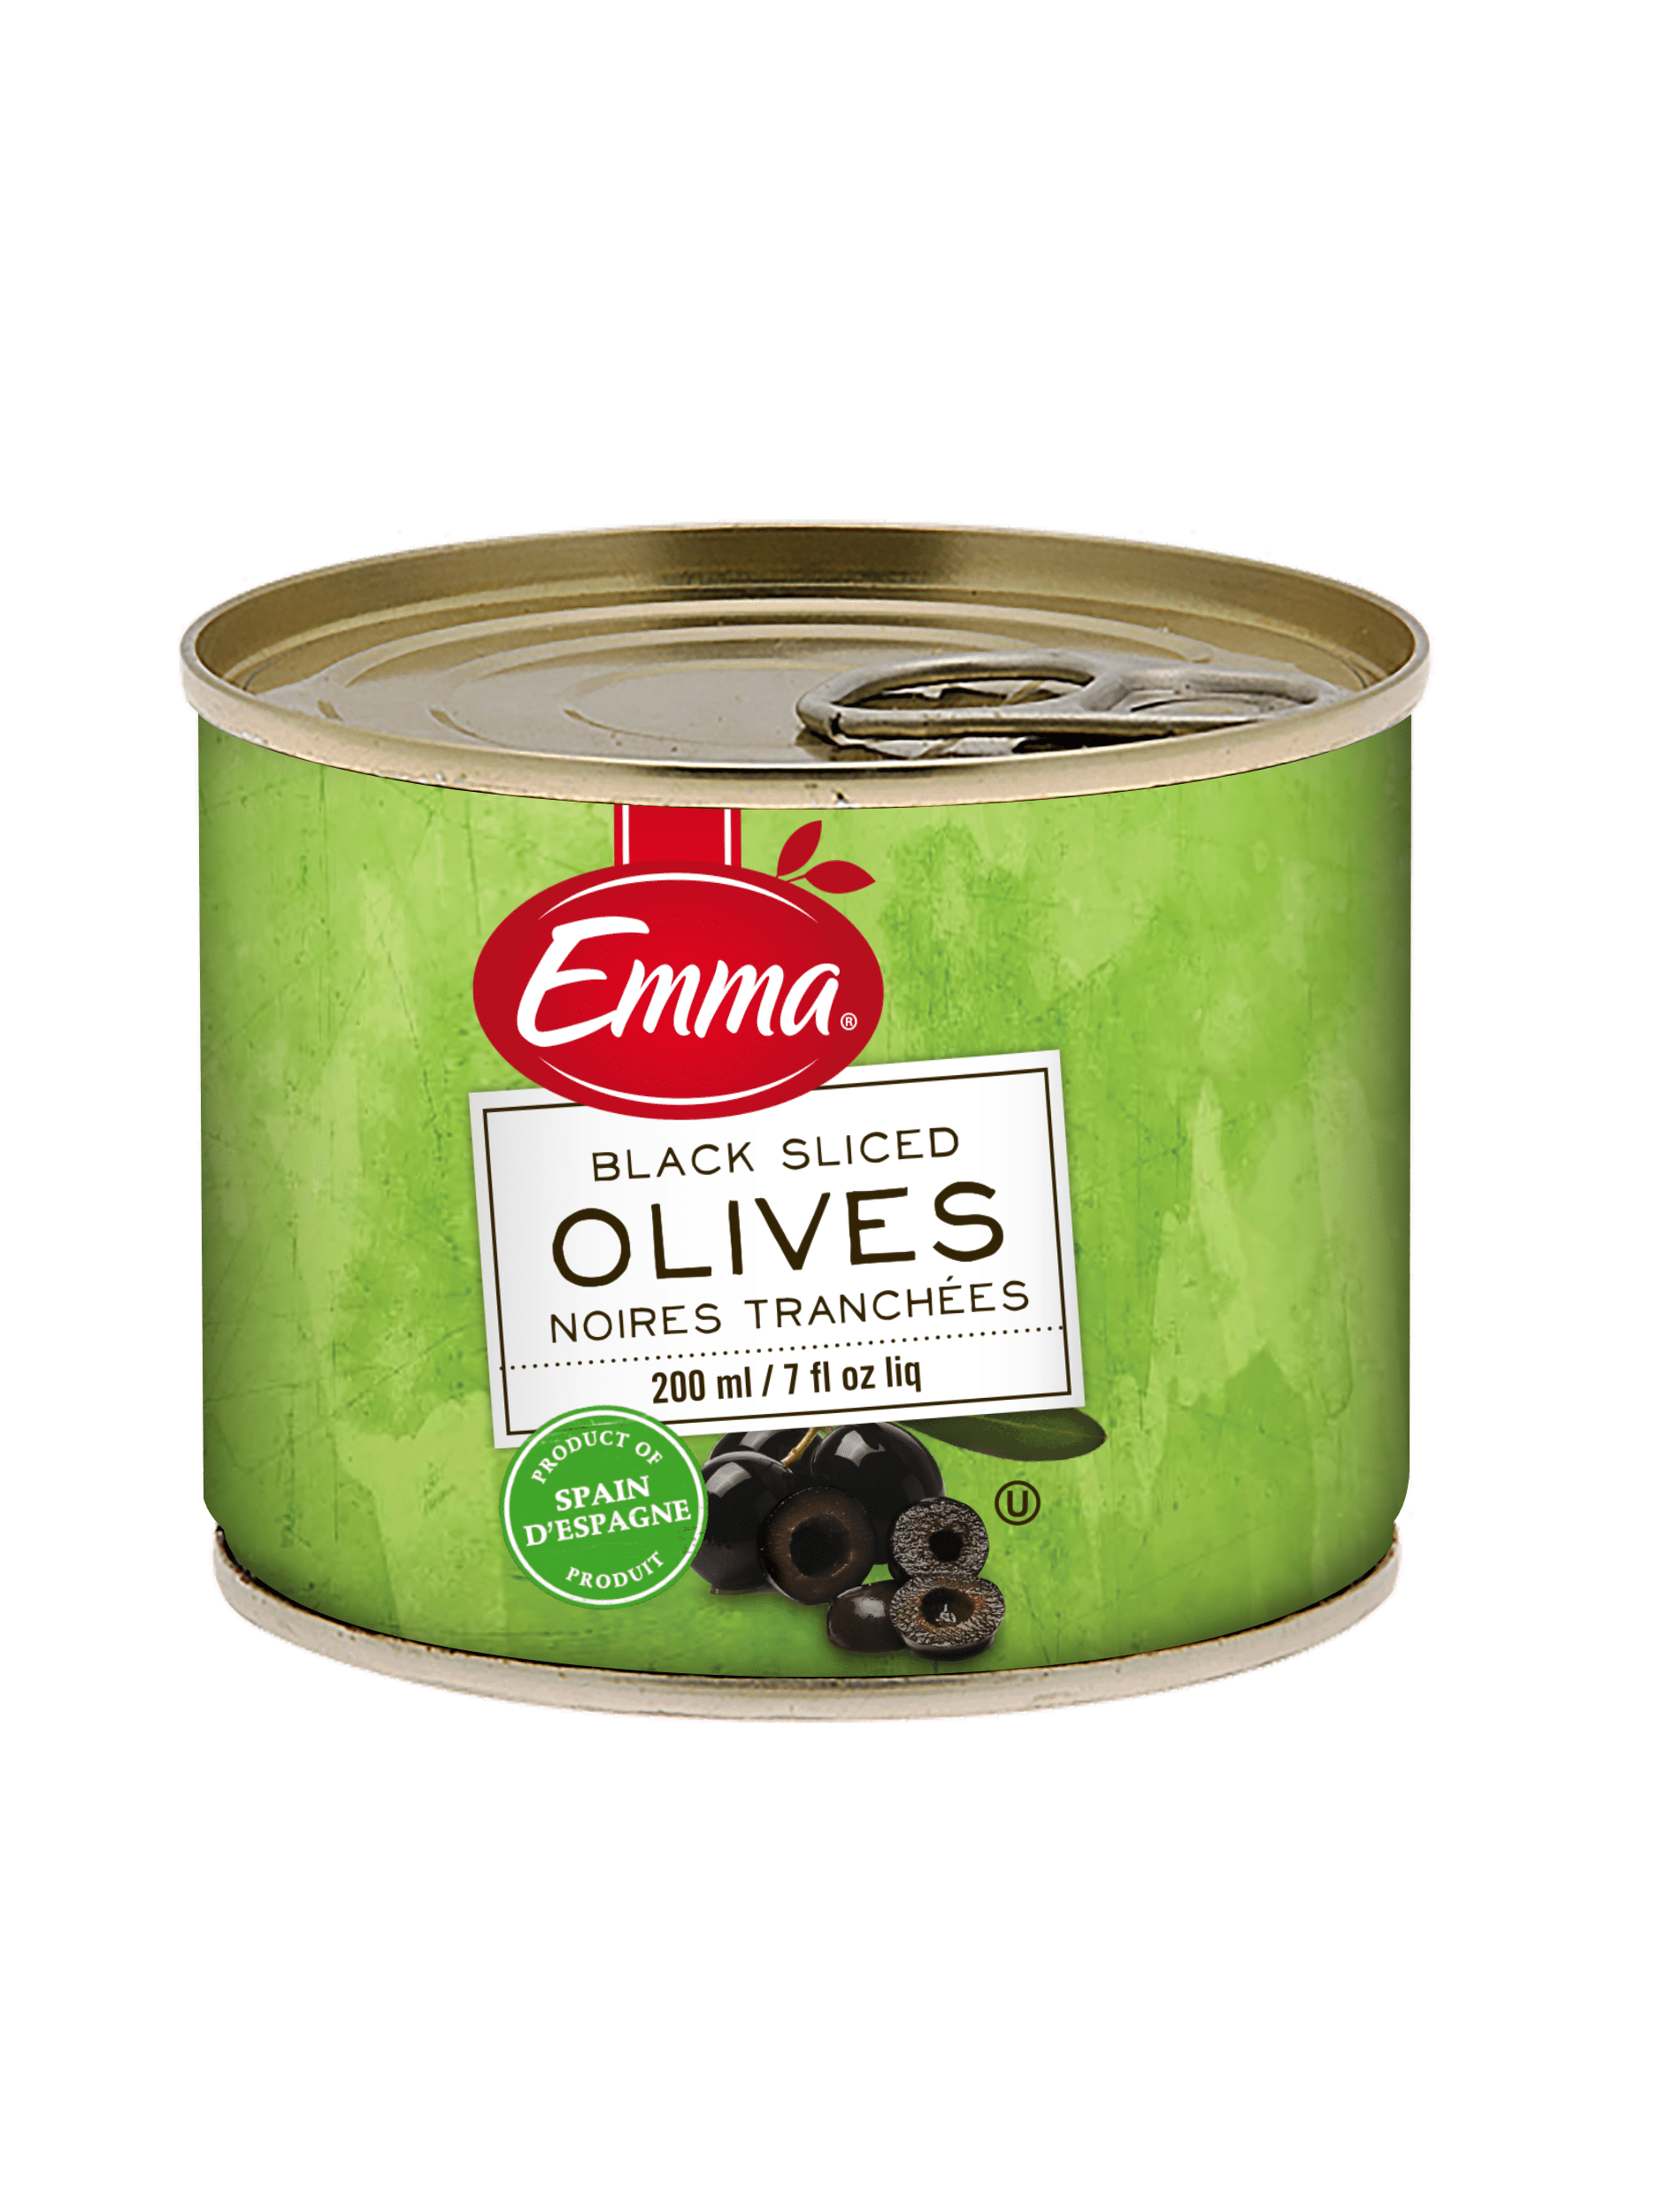 Emma Black Sliced Olives 7 Oz